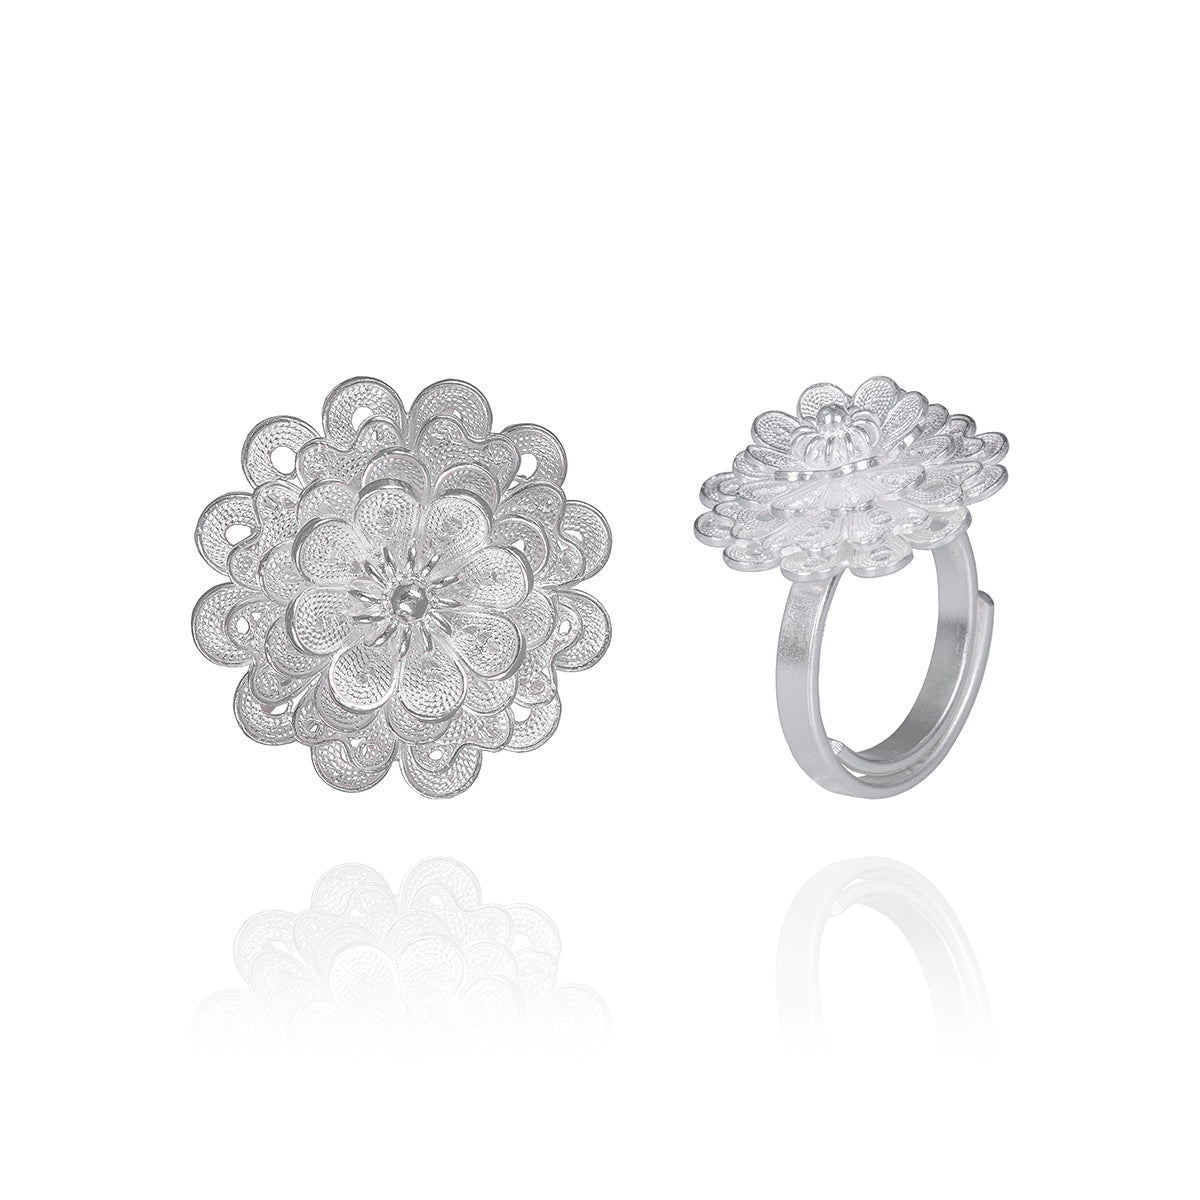 Silver Daisy Flower Ring - fareastjewelry